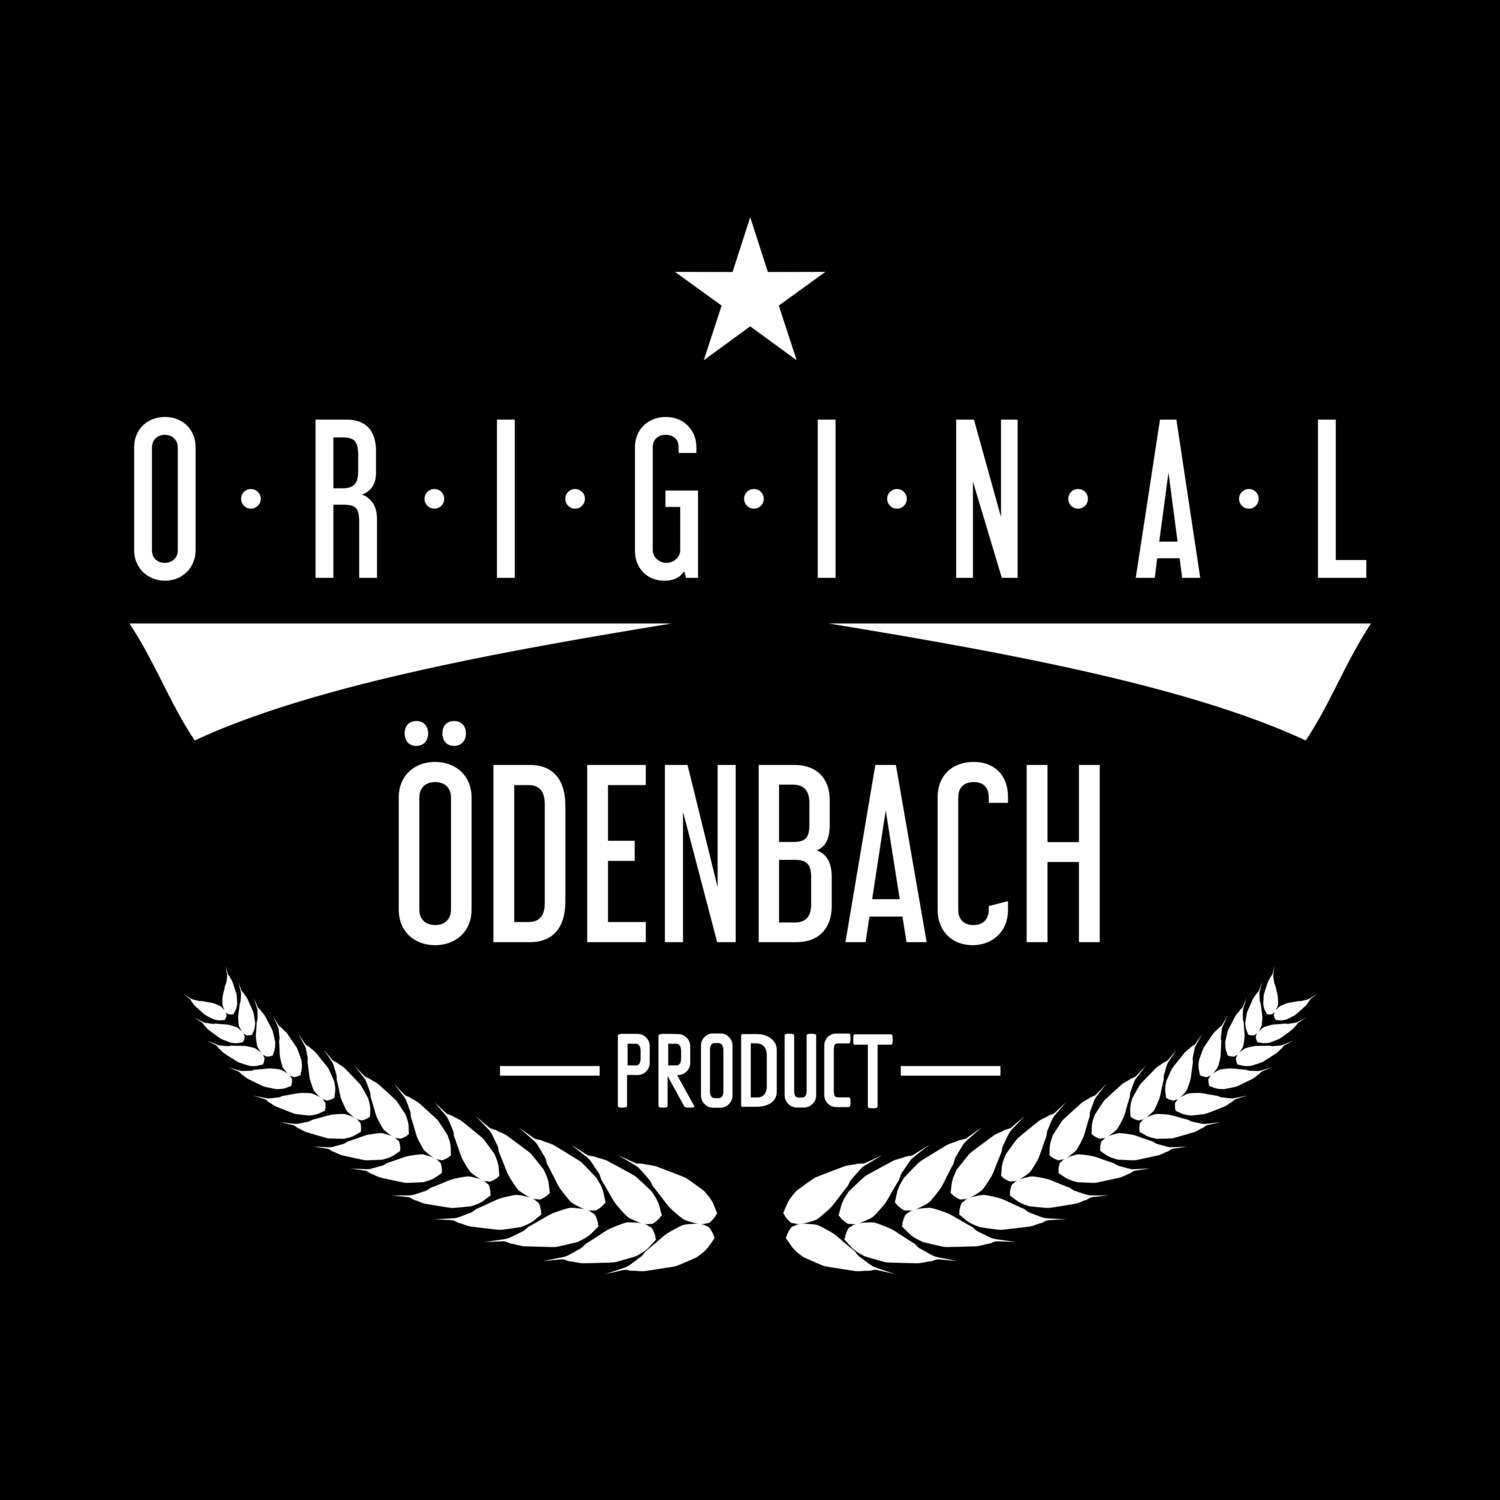 Ödenbach T-Shirt »Original Product«